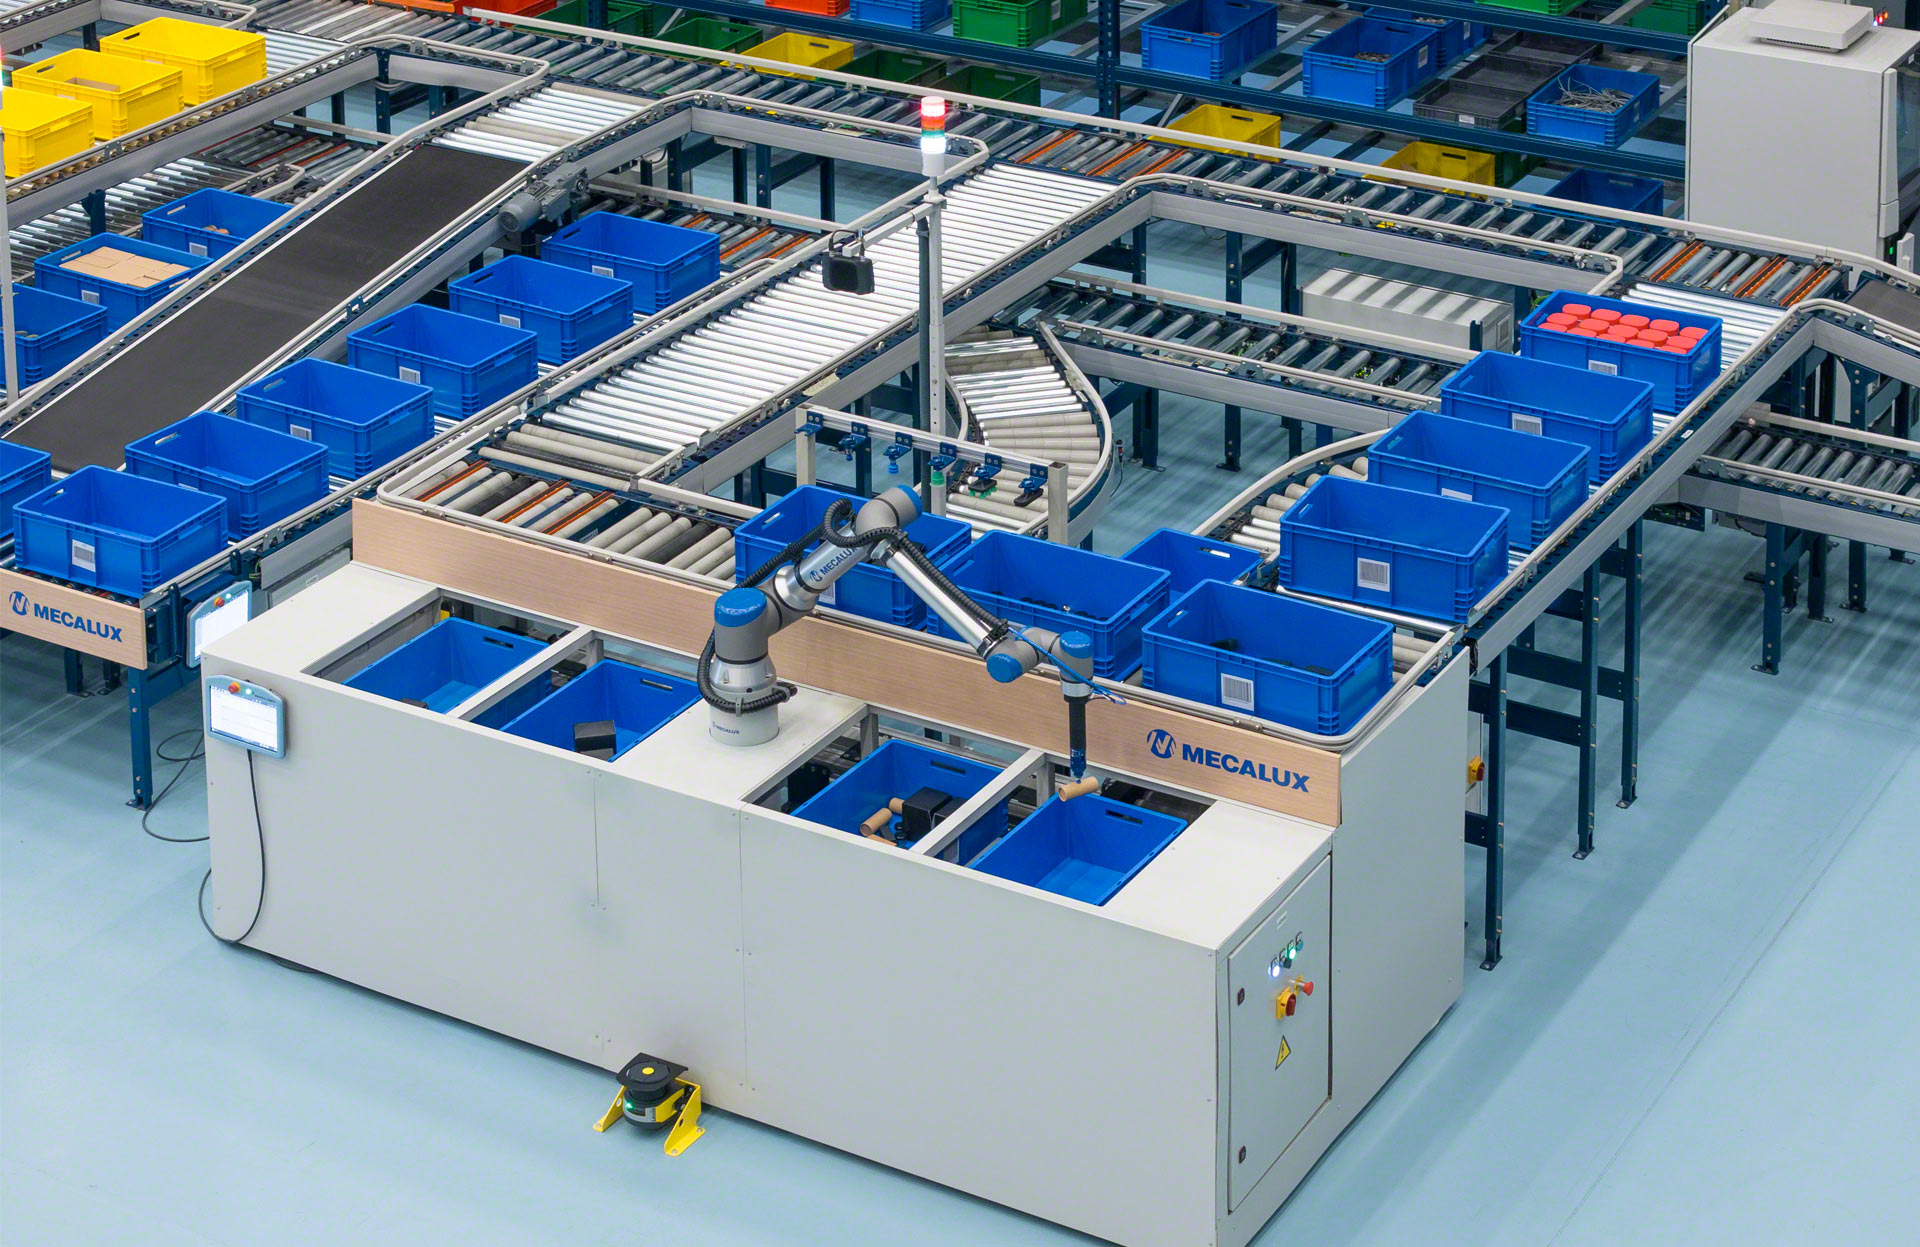 Las estaciones de picking robotizado de Mecalux pueden configurarse para preparar simultáneamente hasta 4 pedidos